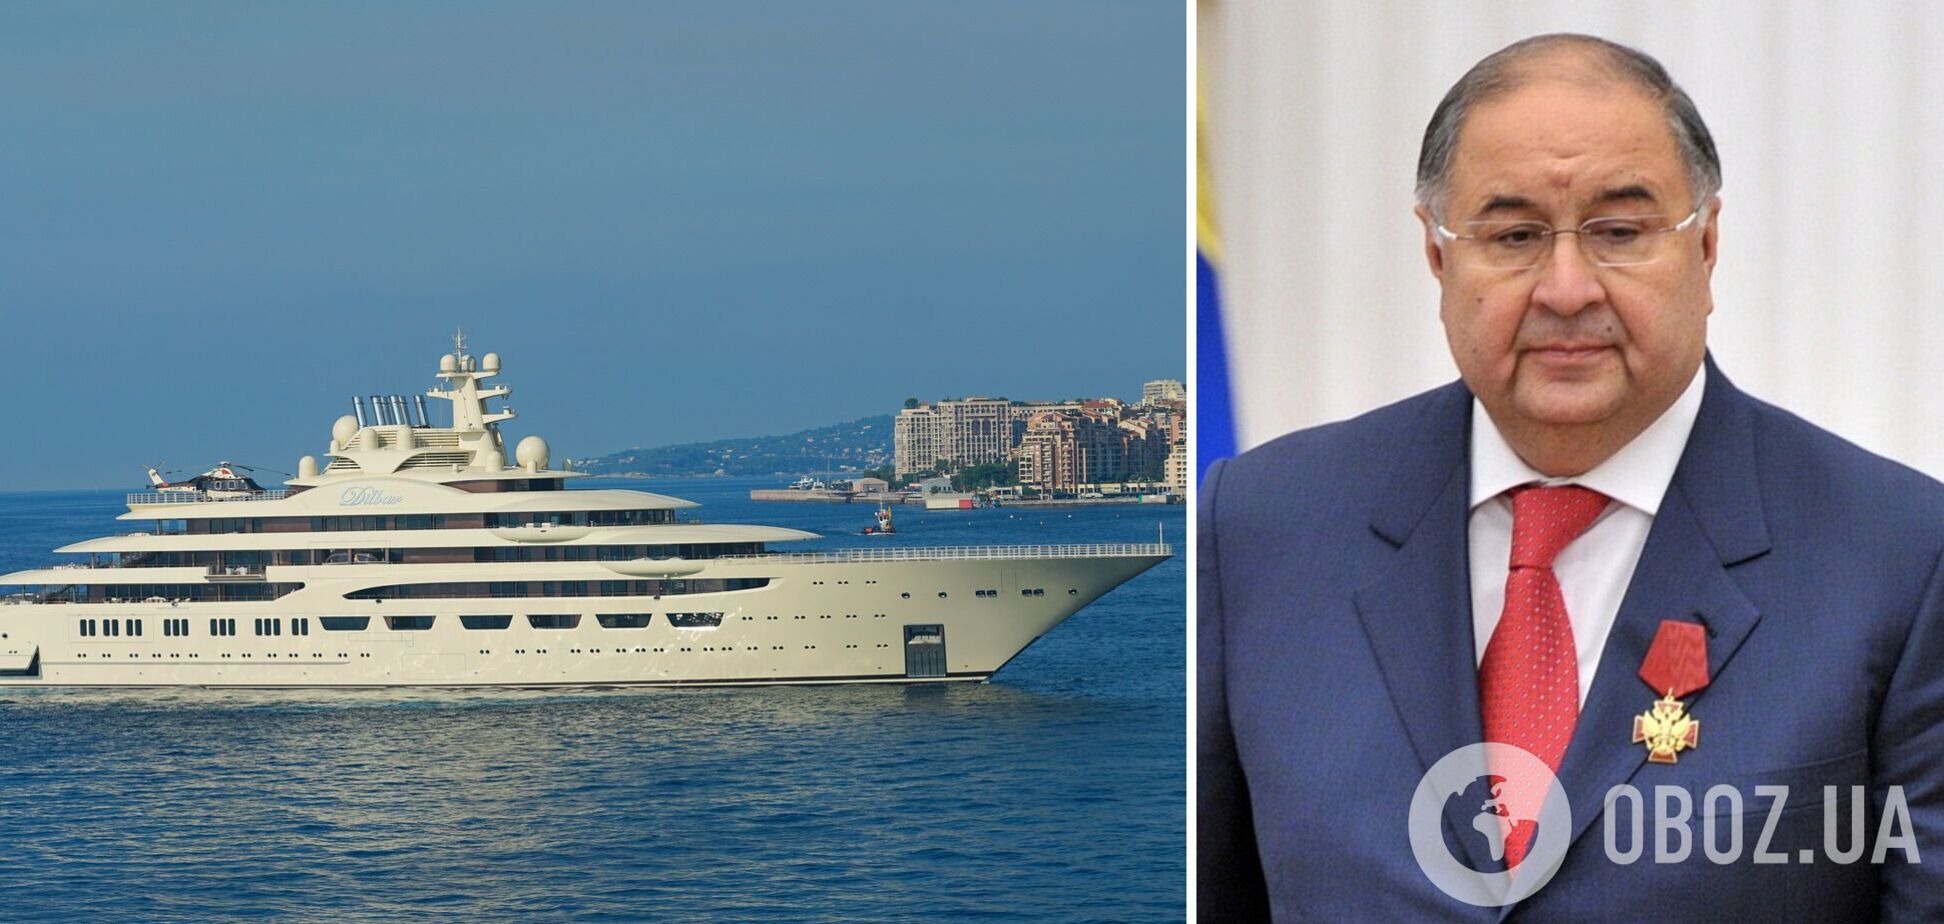 Германия конфисковала 156-метровую яхту российского олигарха Усманова за $600 миллионов